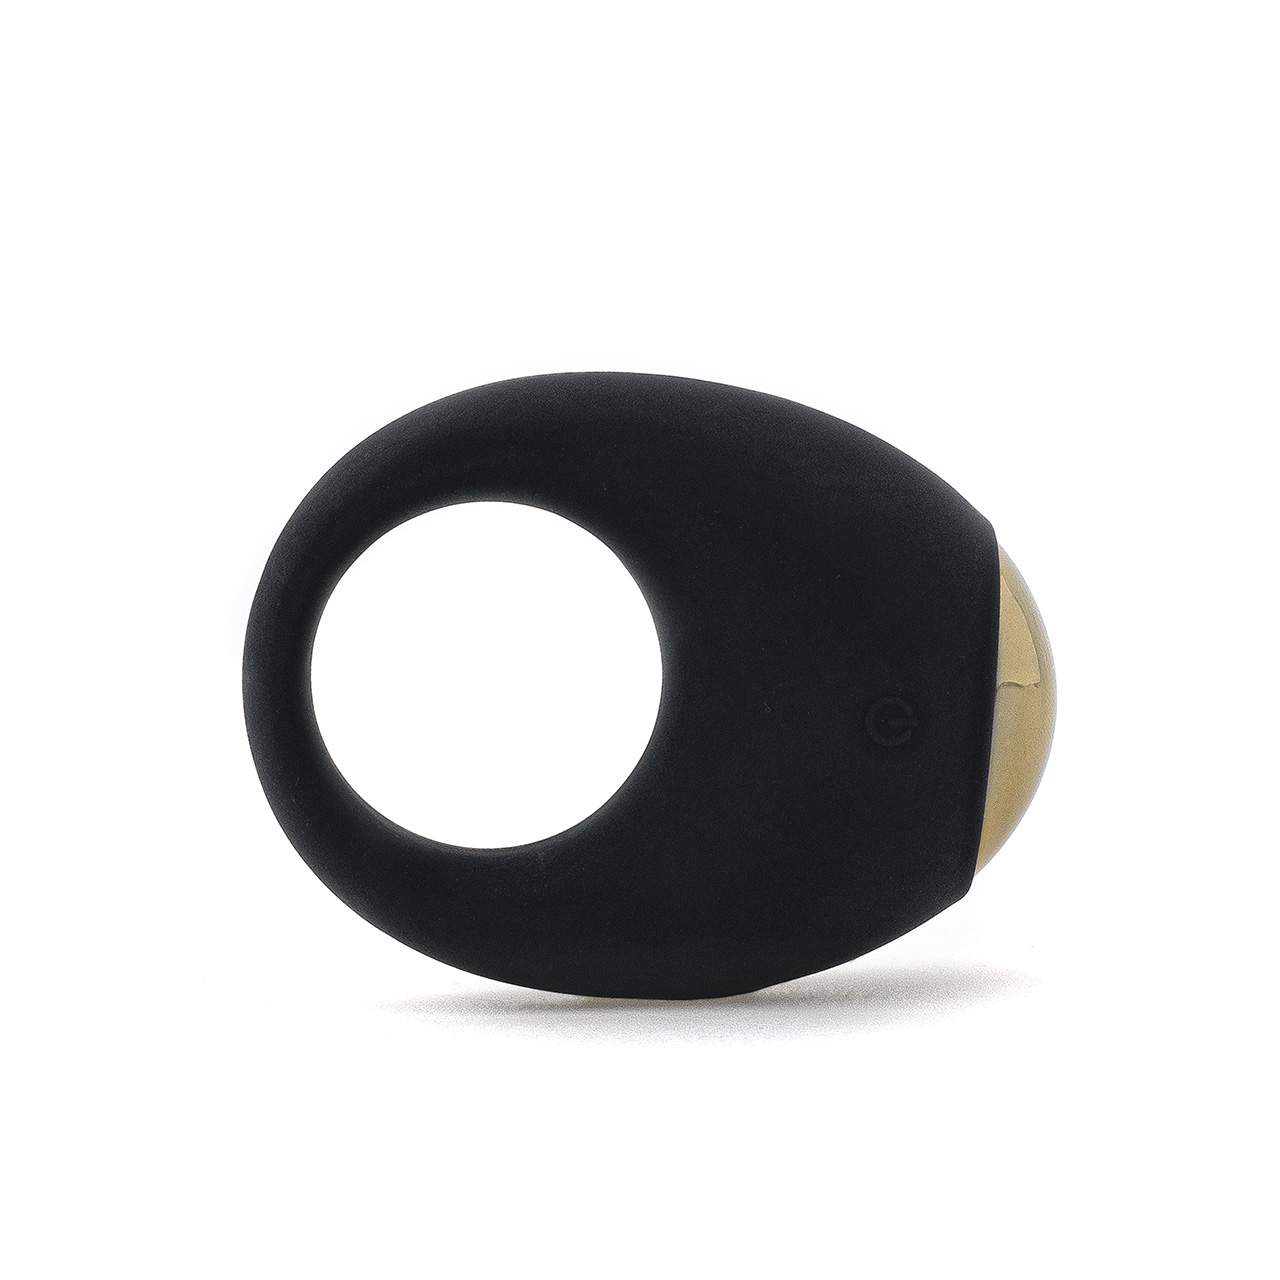 Czarny silikonowy pierścień erekcyjny  – 3,5 cm, 7 funkcji pracy